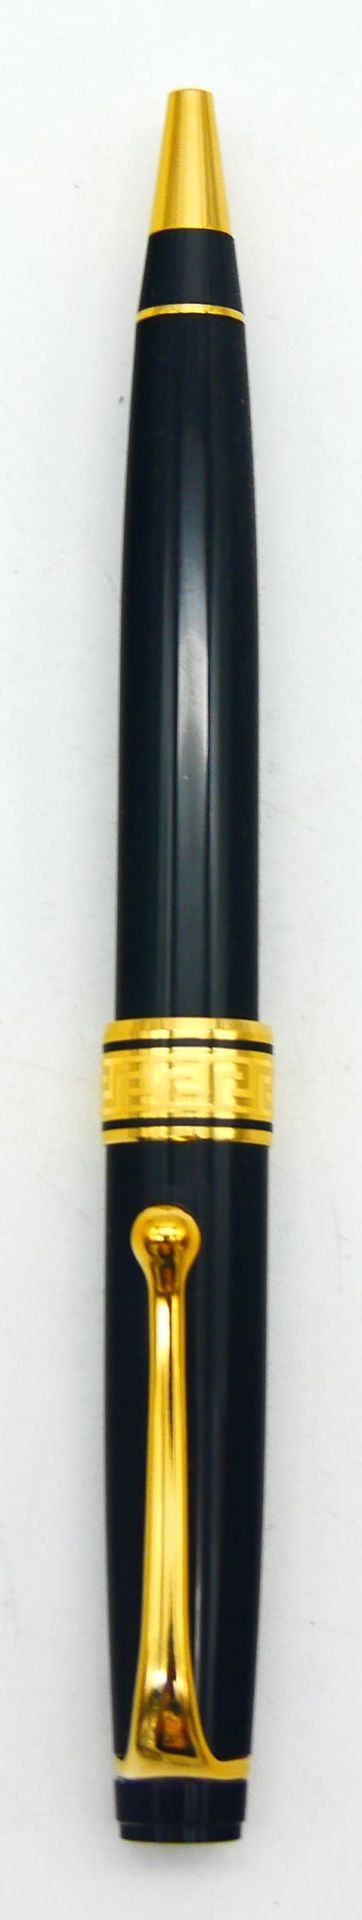 Null 傲罗拉

铂金

黑色树脂和镀金金属传声器，带有刻有奥罗拉字样的希腊人楣板

长：13.5厘米，5.2英寸。



状况非常好